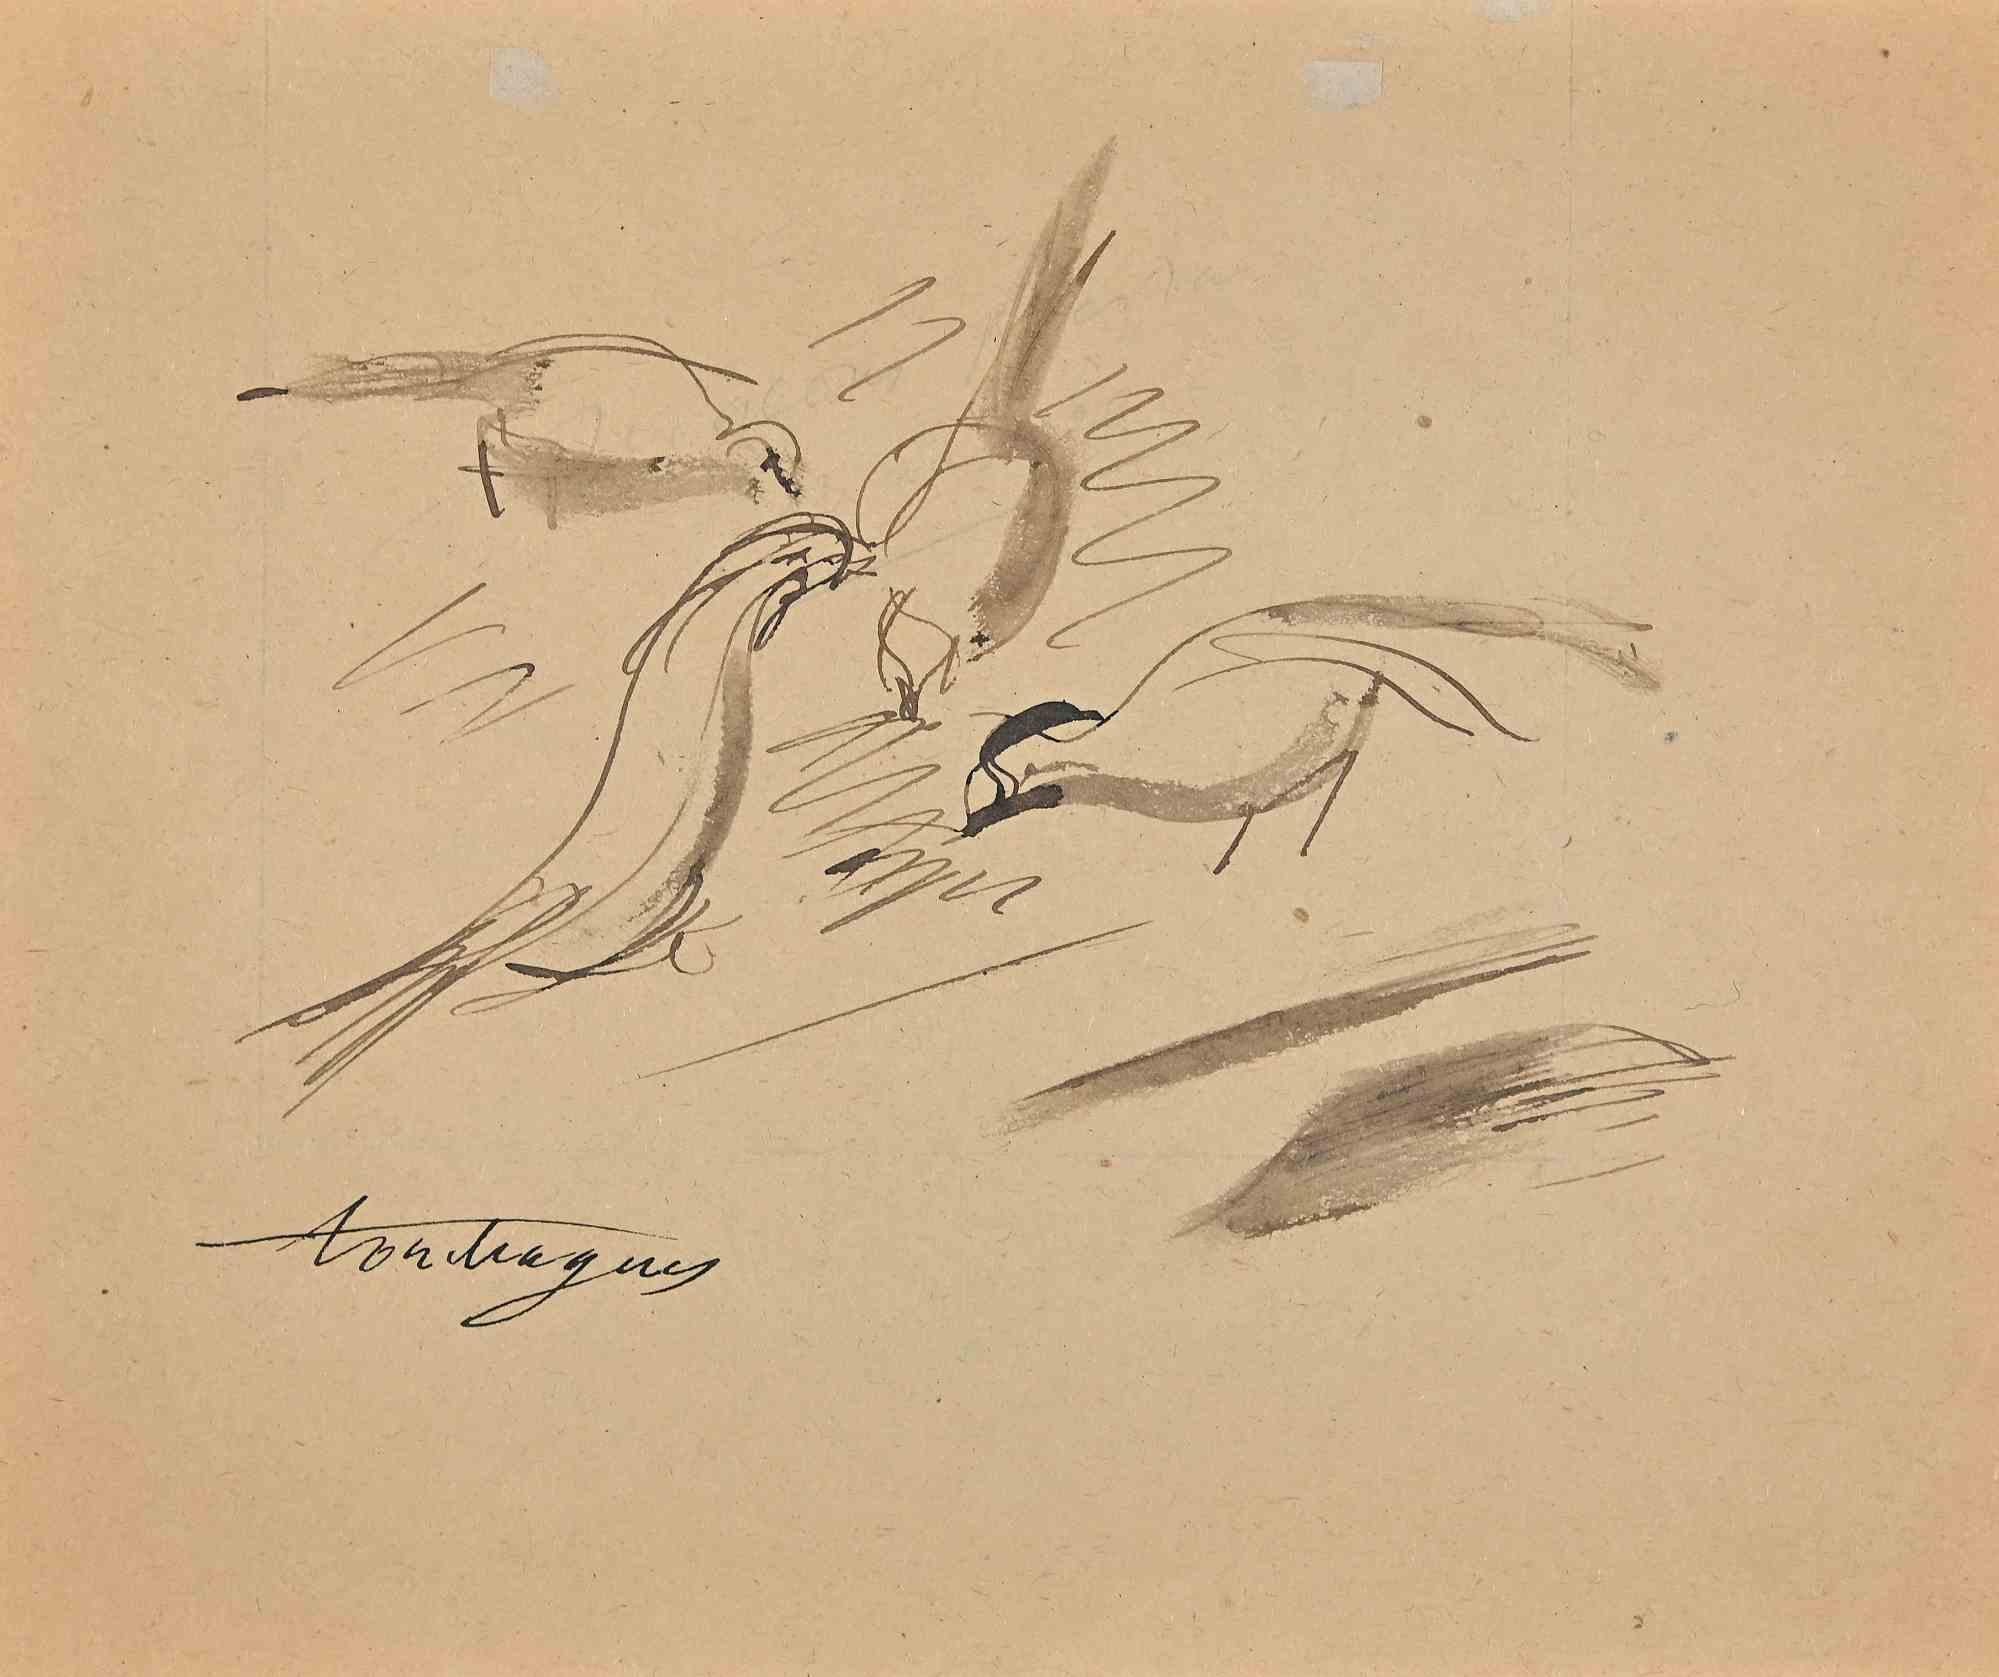 Les Oiseaux est un dessin original réalisé par Louis Touchagues au milieu du 20ème siècle.

Dessin à l'encre et au stylo.

Signé à la main en bas par l'artiste.

Bonnes conditions.

Les traits fins, délicats et magnifiques, forment l'œuvre d'art de